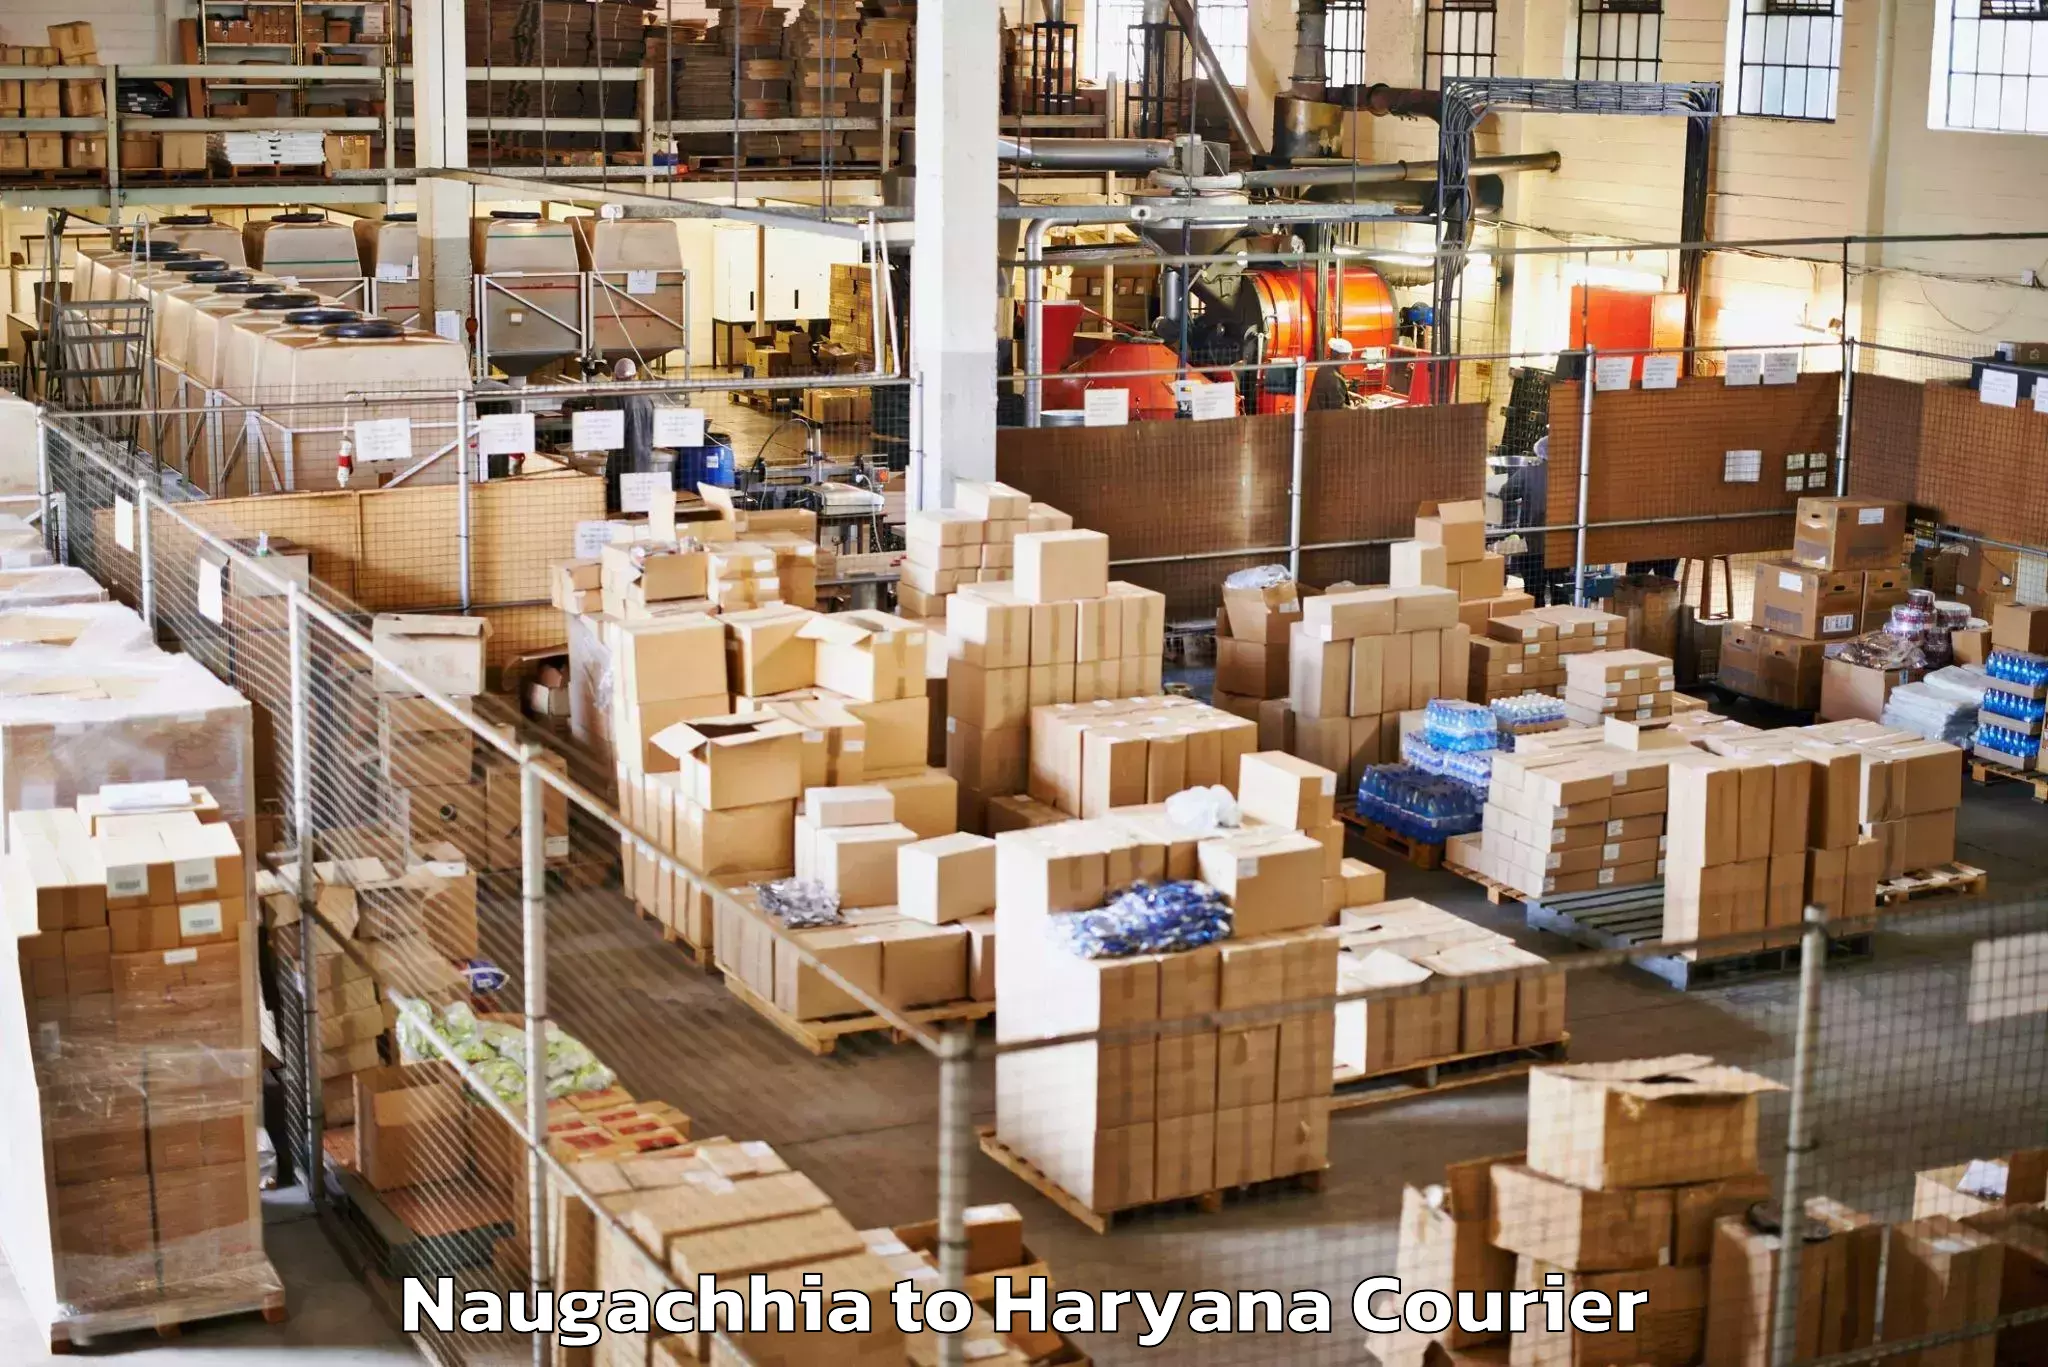 Luggage shipment specialists Naugachhia to NCR Haryana